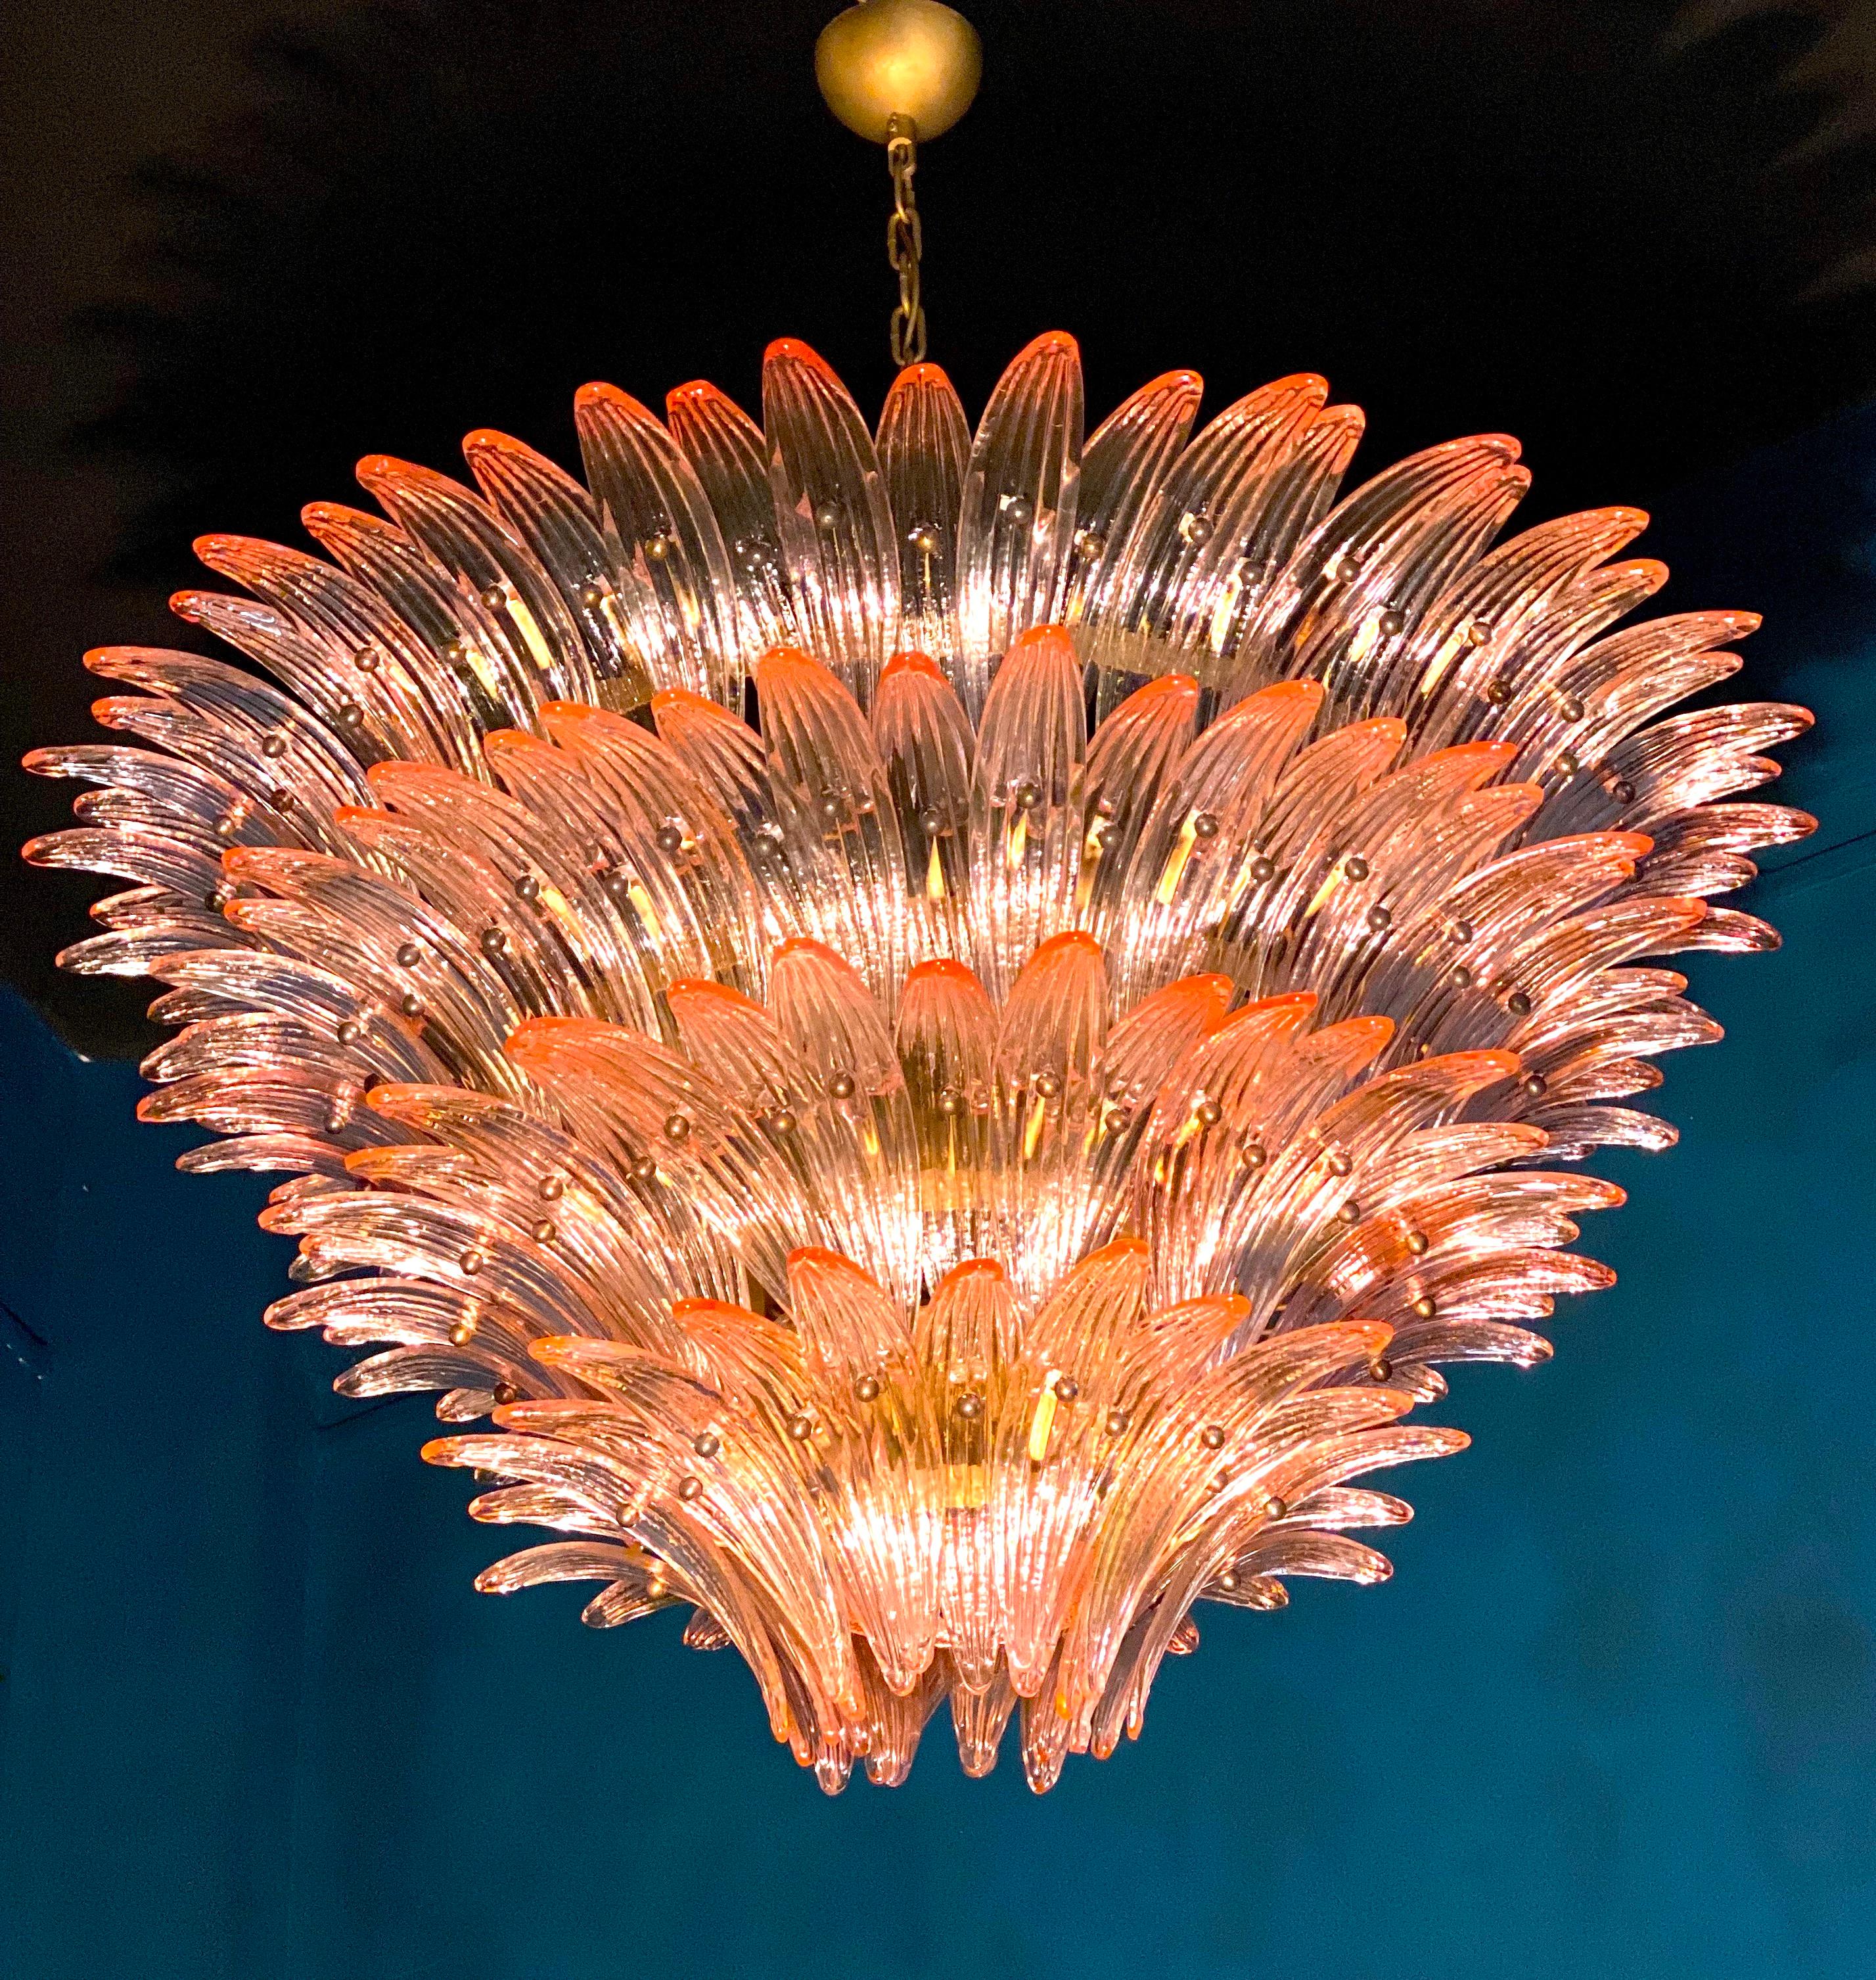 Hervorragender rosafarbener Palmette-Kronleuchter aus Murano-Glas mit 163 kostbaren Gläsern auf vier Ebenen.
Goldfarbener Metallrahmen.
Erhältlich auch ein Paar und ein Paar von Wandleuchten.
12 Glühbirnen, Größe E27
Abmessungen: 55,10 Zoll (140 cm)